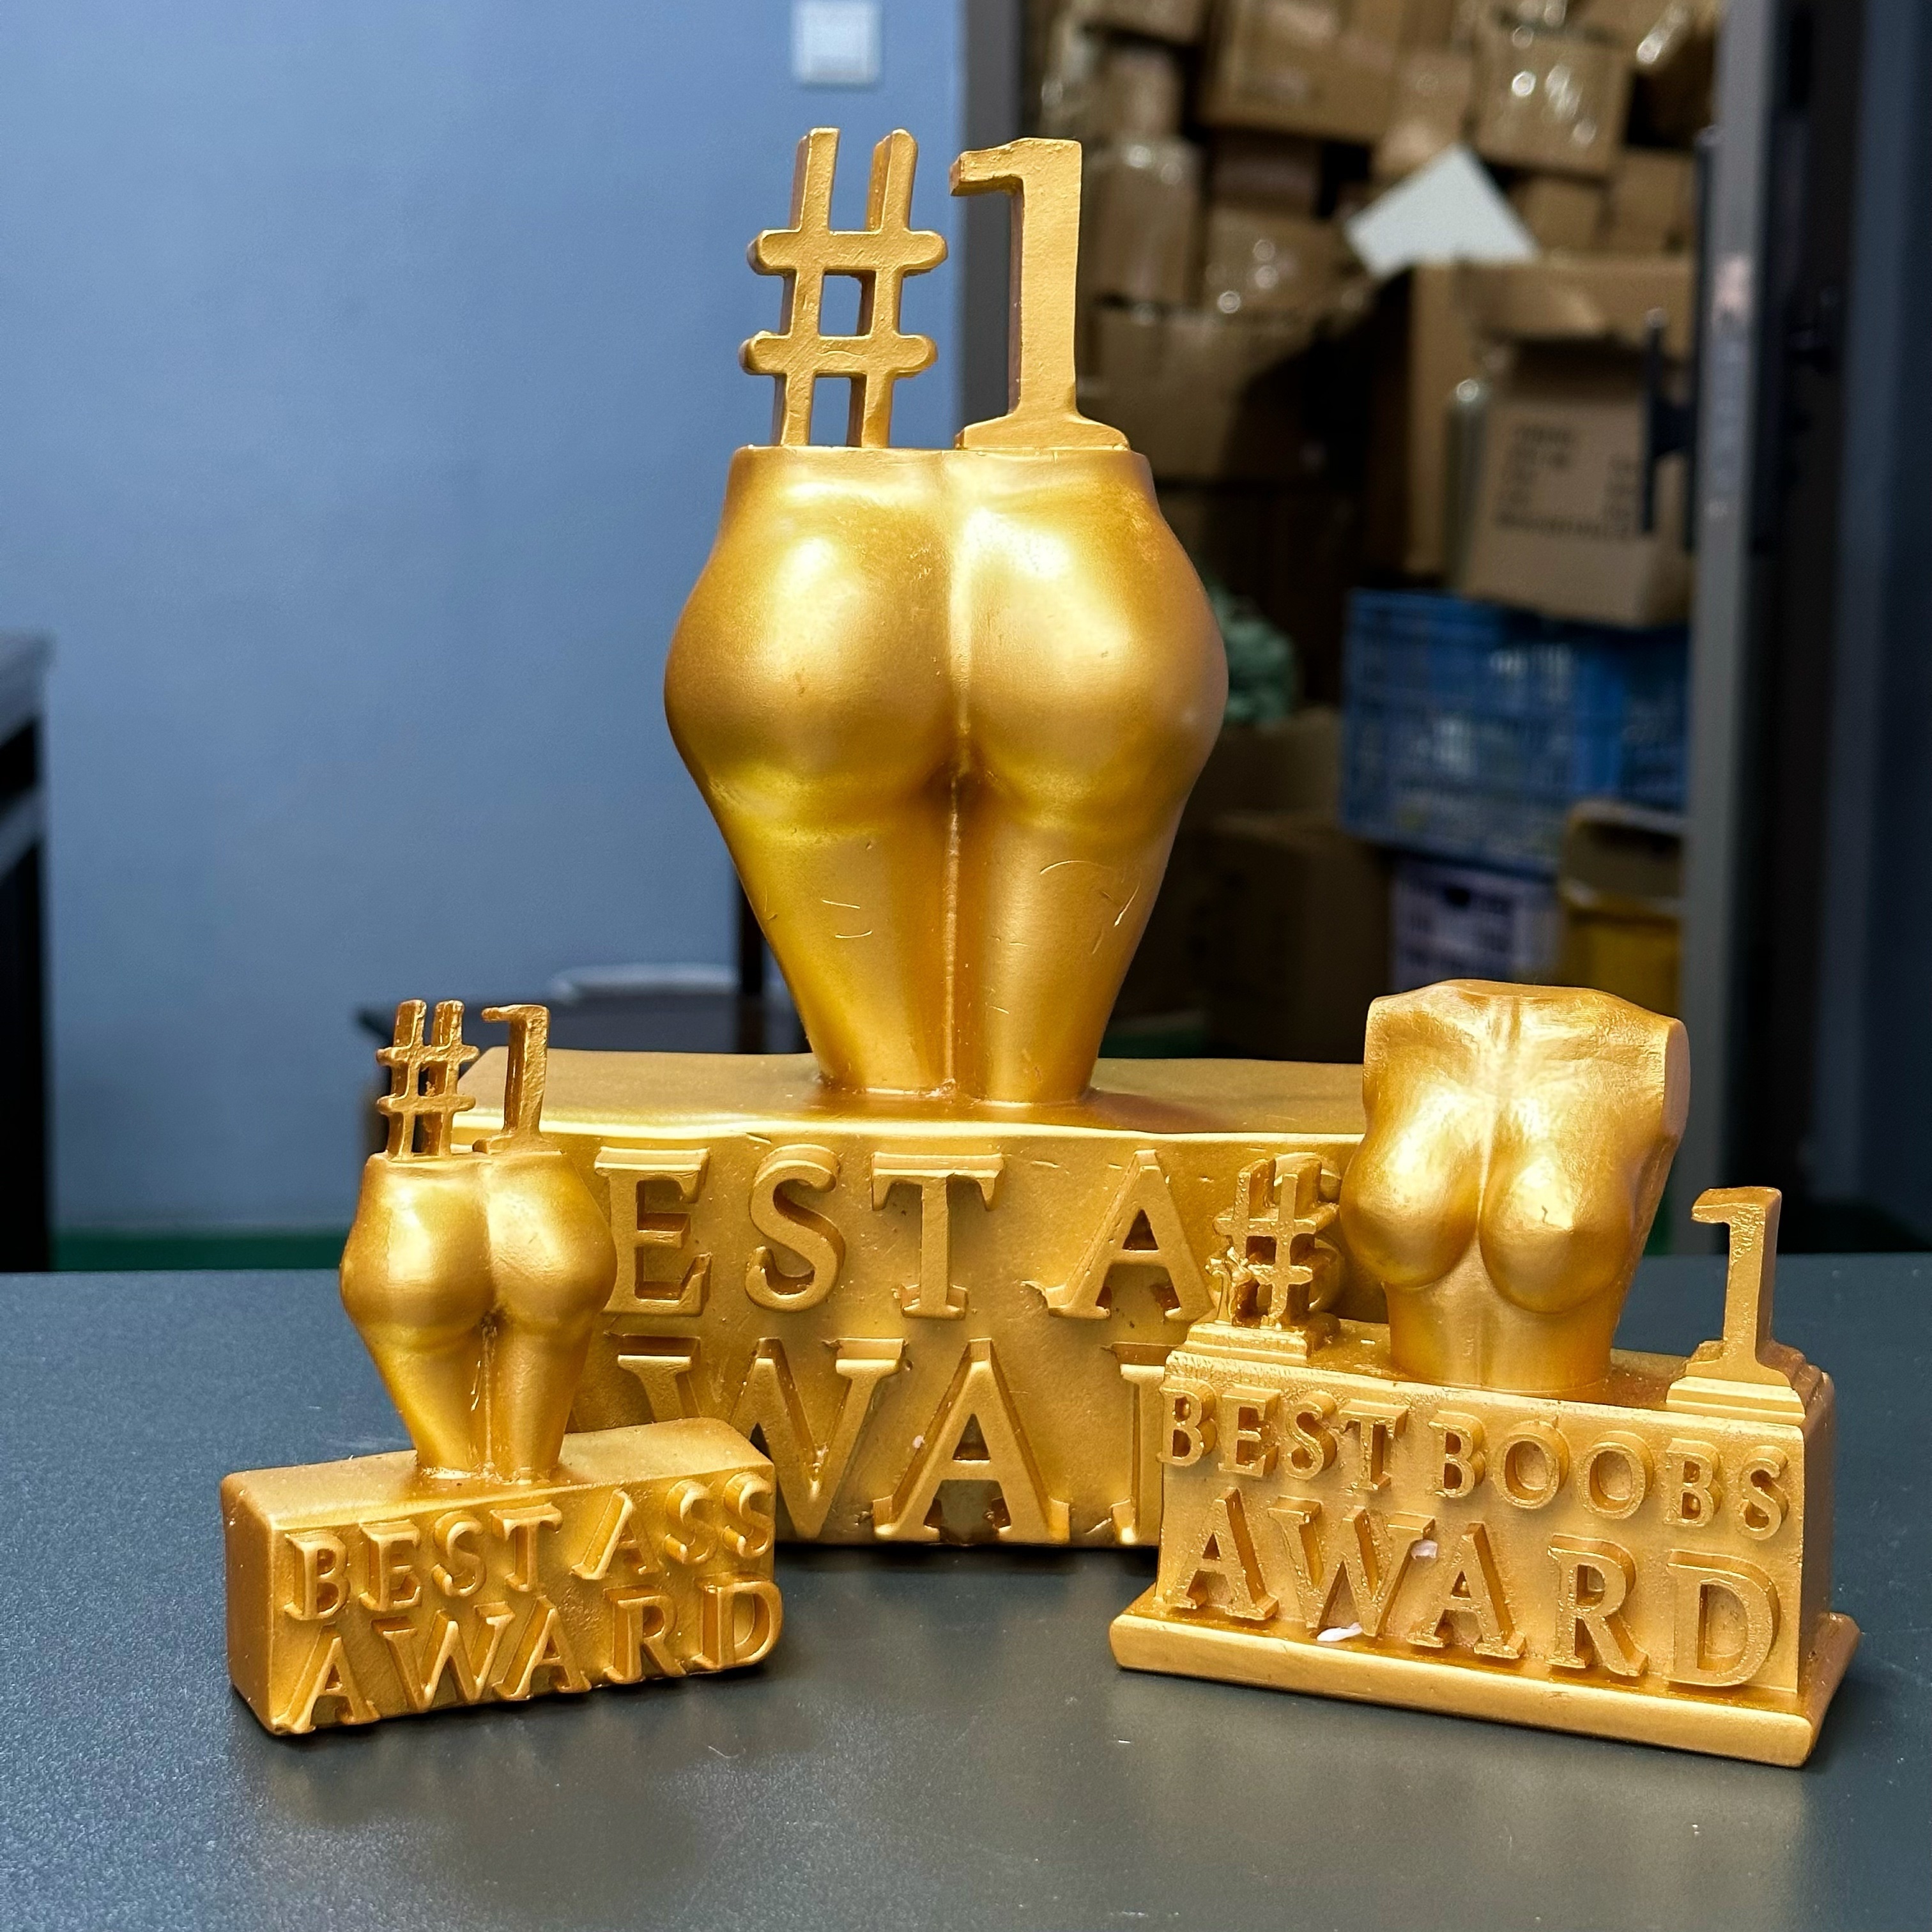 Best Ass Award,best Boobs Award Statue,funny Ass/boobs Award Trophy Desktop  Decor,naughty Prank Resin Trophy Statue Desktop Home Decor,prank Gift For